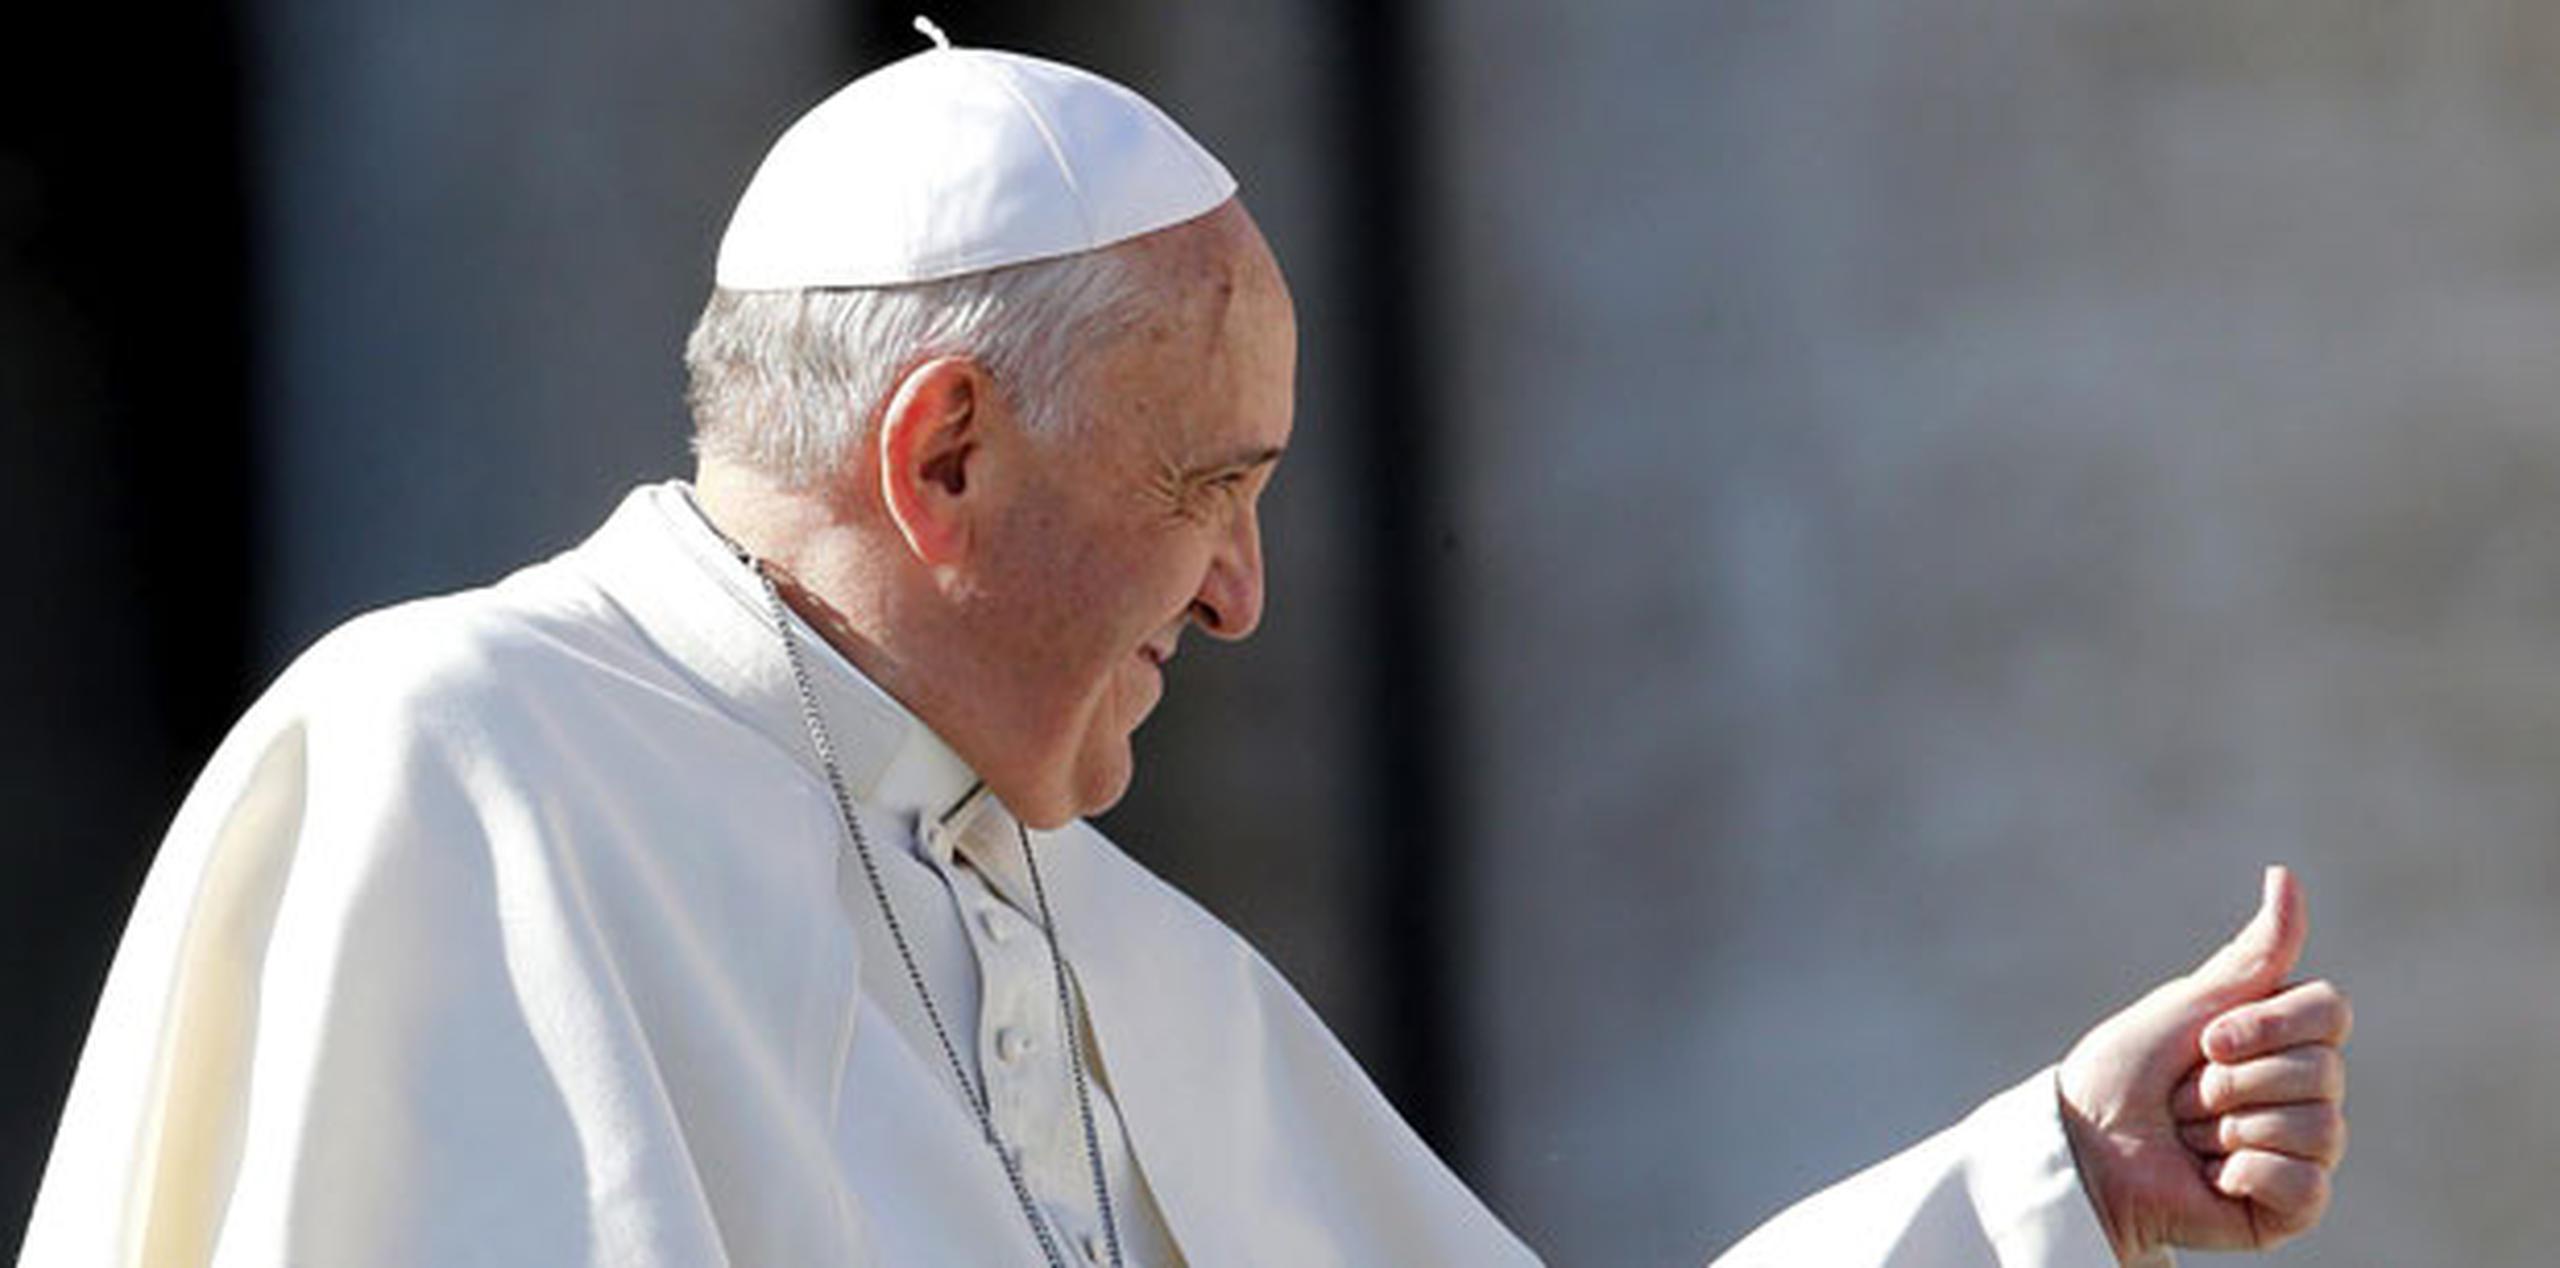 El pontífice se lamenta a menudo por los matrimonios que terminan en divorcio. (EFE)
